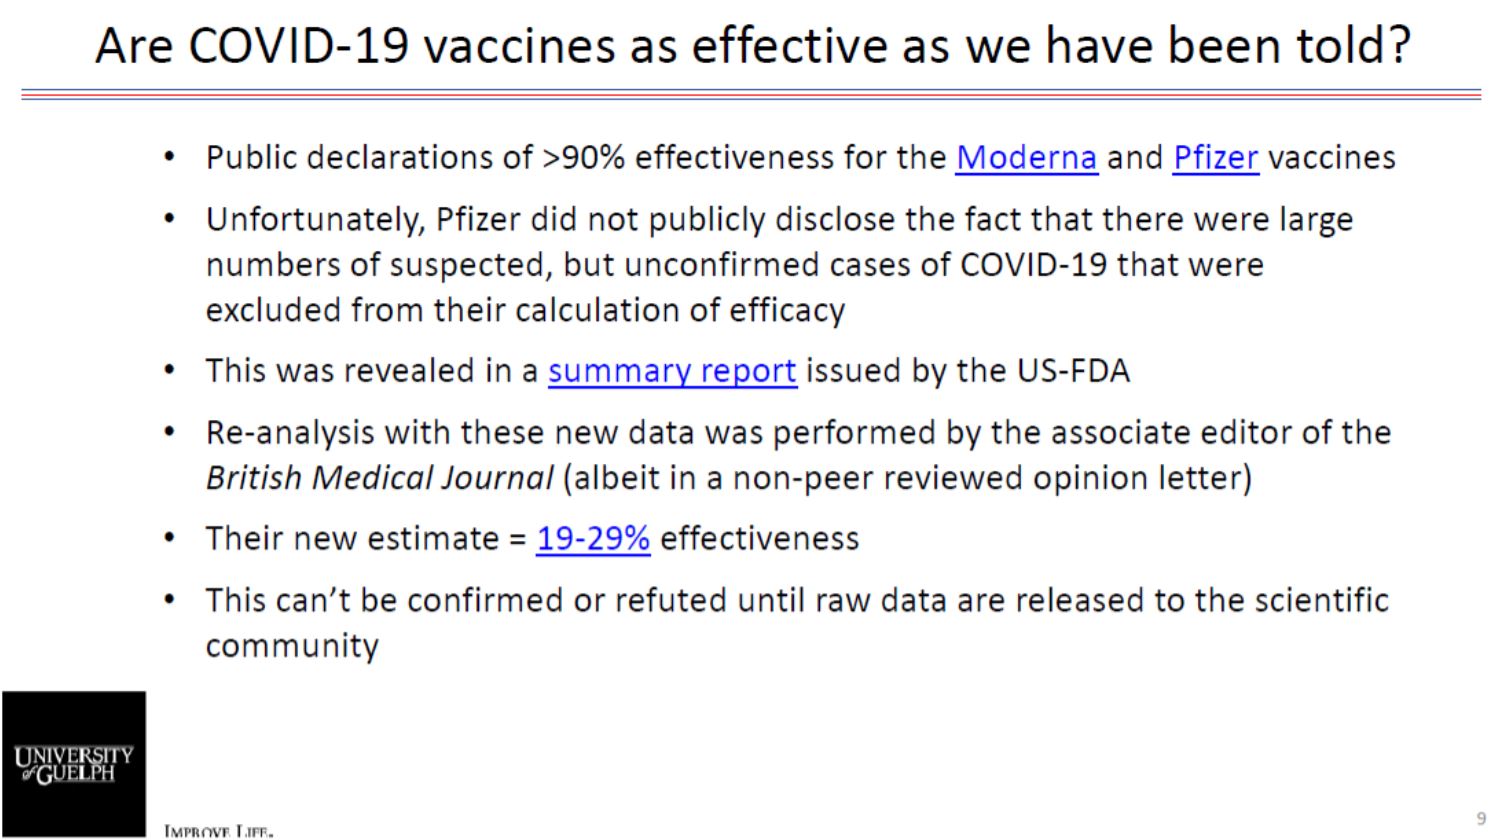 les-vaccins-covid-19-sont-ils-aussi-efficaces-qu-on-nous-l-a-dit.JPG